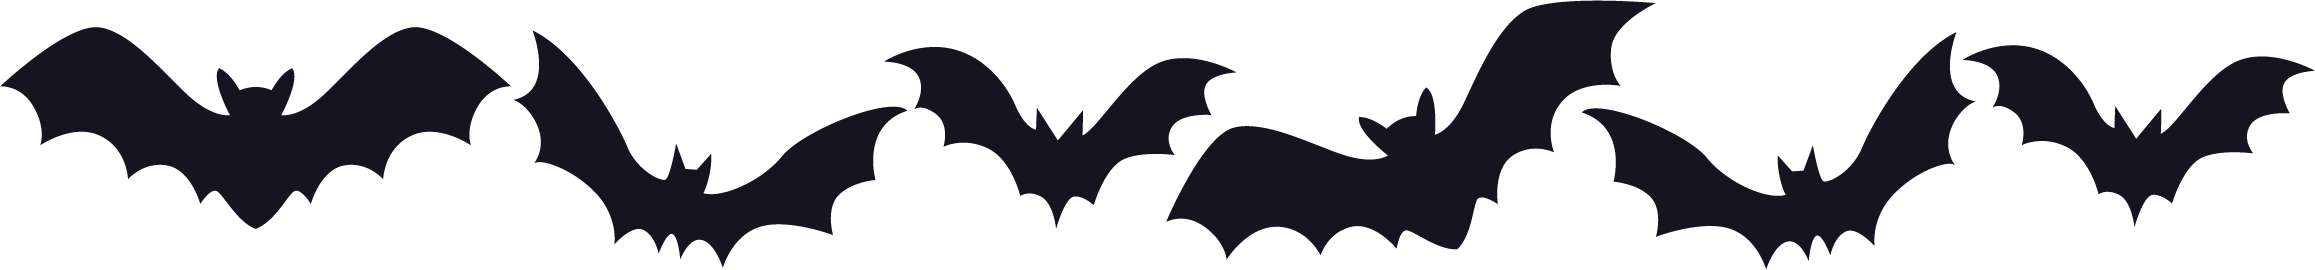 Thanksgiving Dot Com Halloween Border Bats - Thanksgiving Dot Com Halloween Border Bats (2315x270)